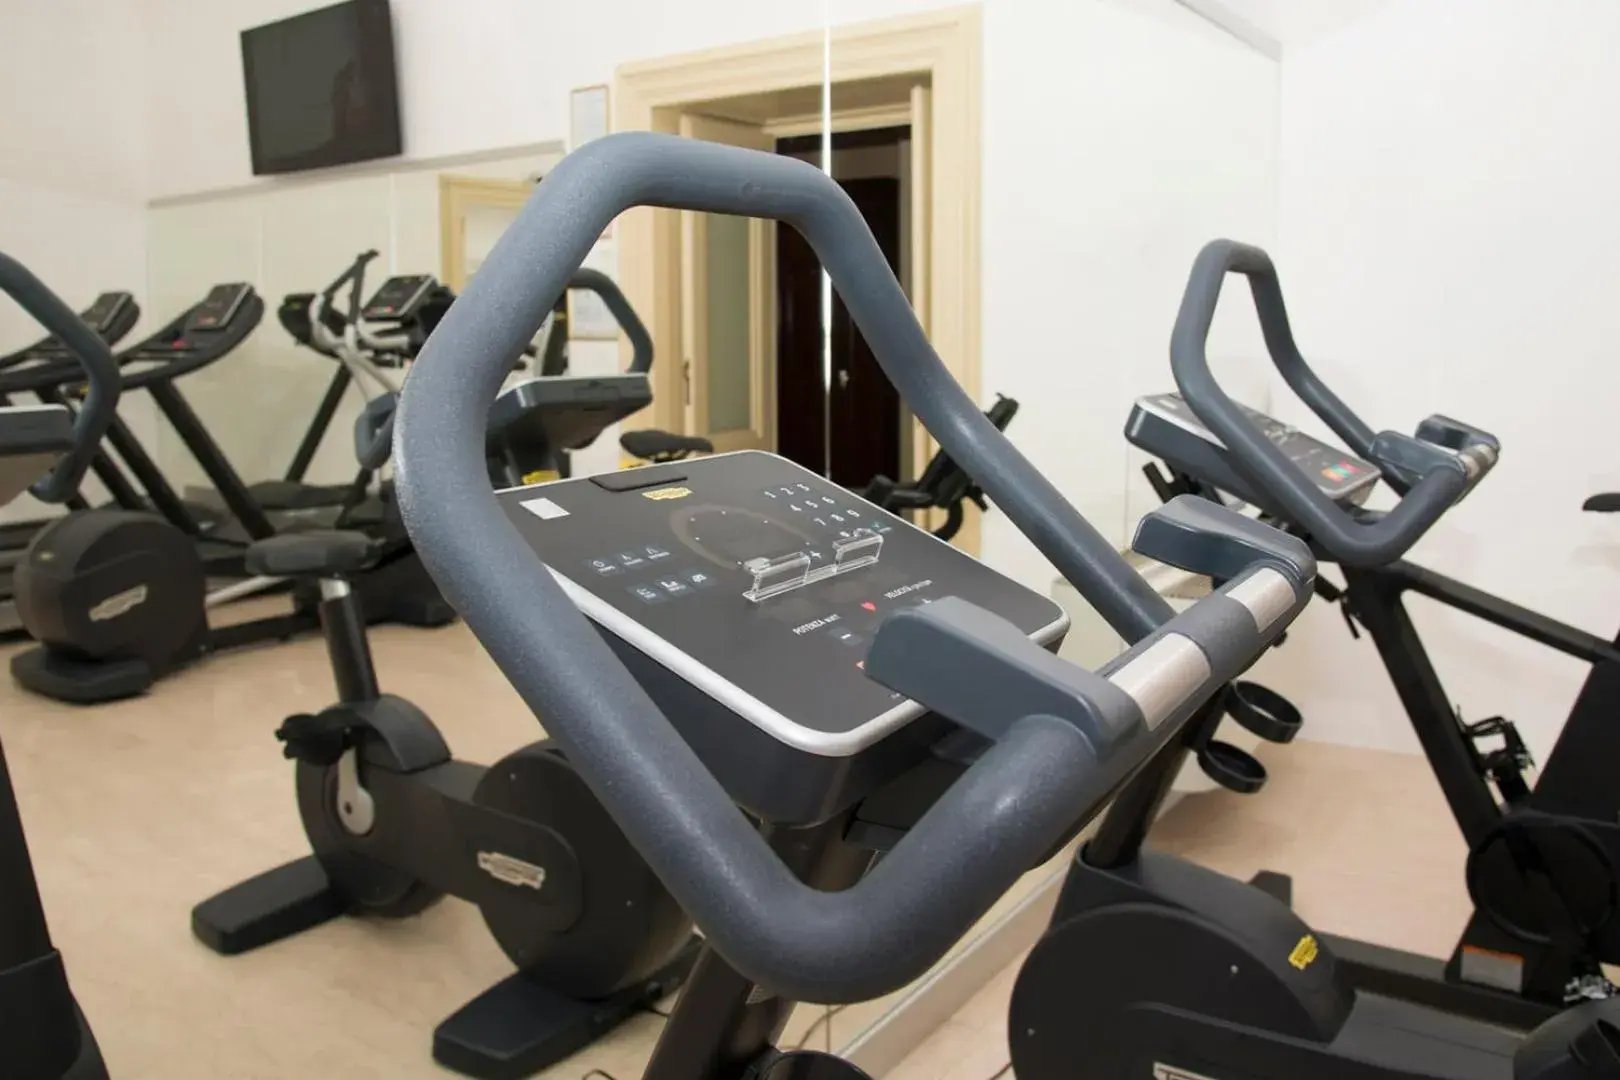 Fitness centre/facilities, Fitness Center/Facilities in Villa Fenaroli Palace Hotel